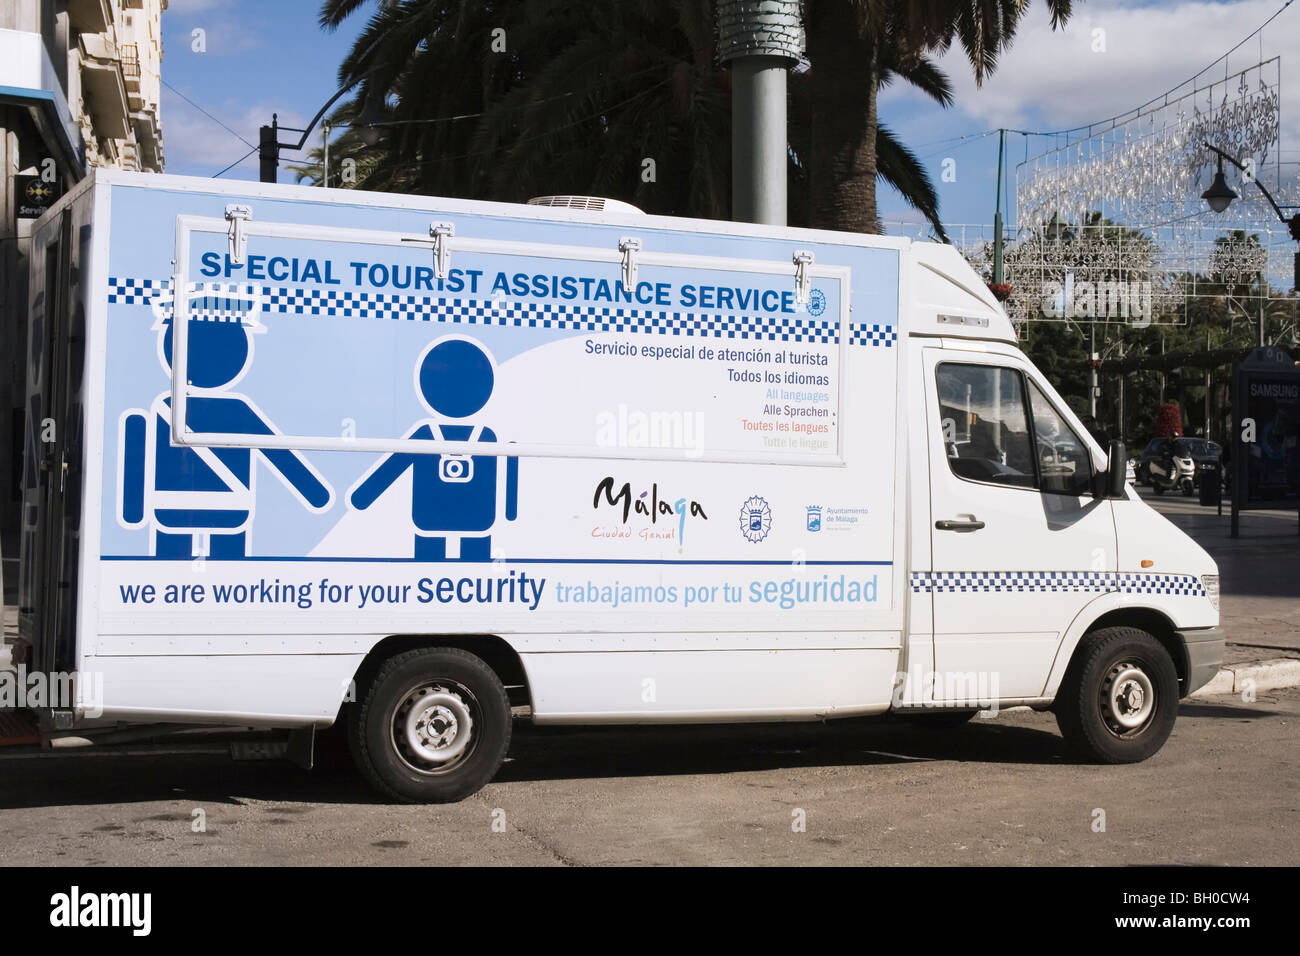 Malaga, Costa del Sol, Spagna. Offerte Servizi di Assistenza Turistica van parcheggiato nel centro citta'. Foto Stock